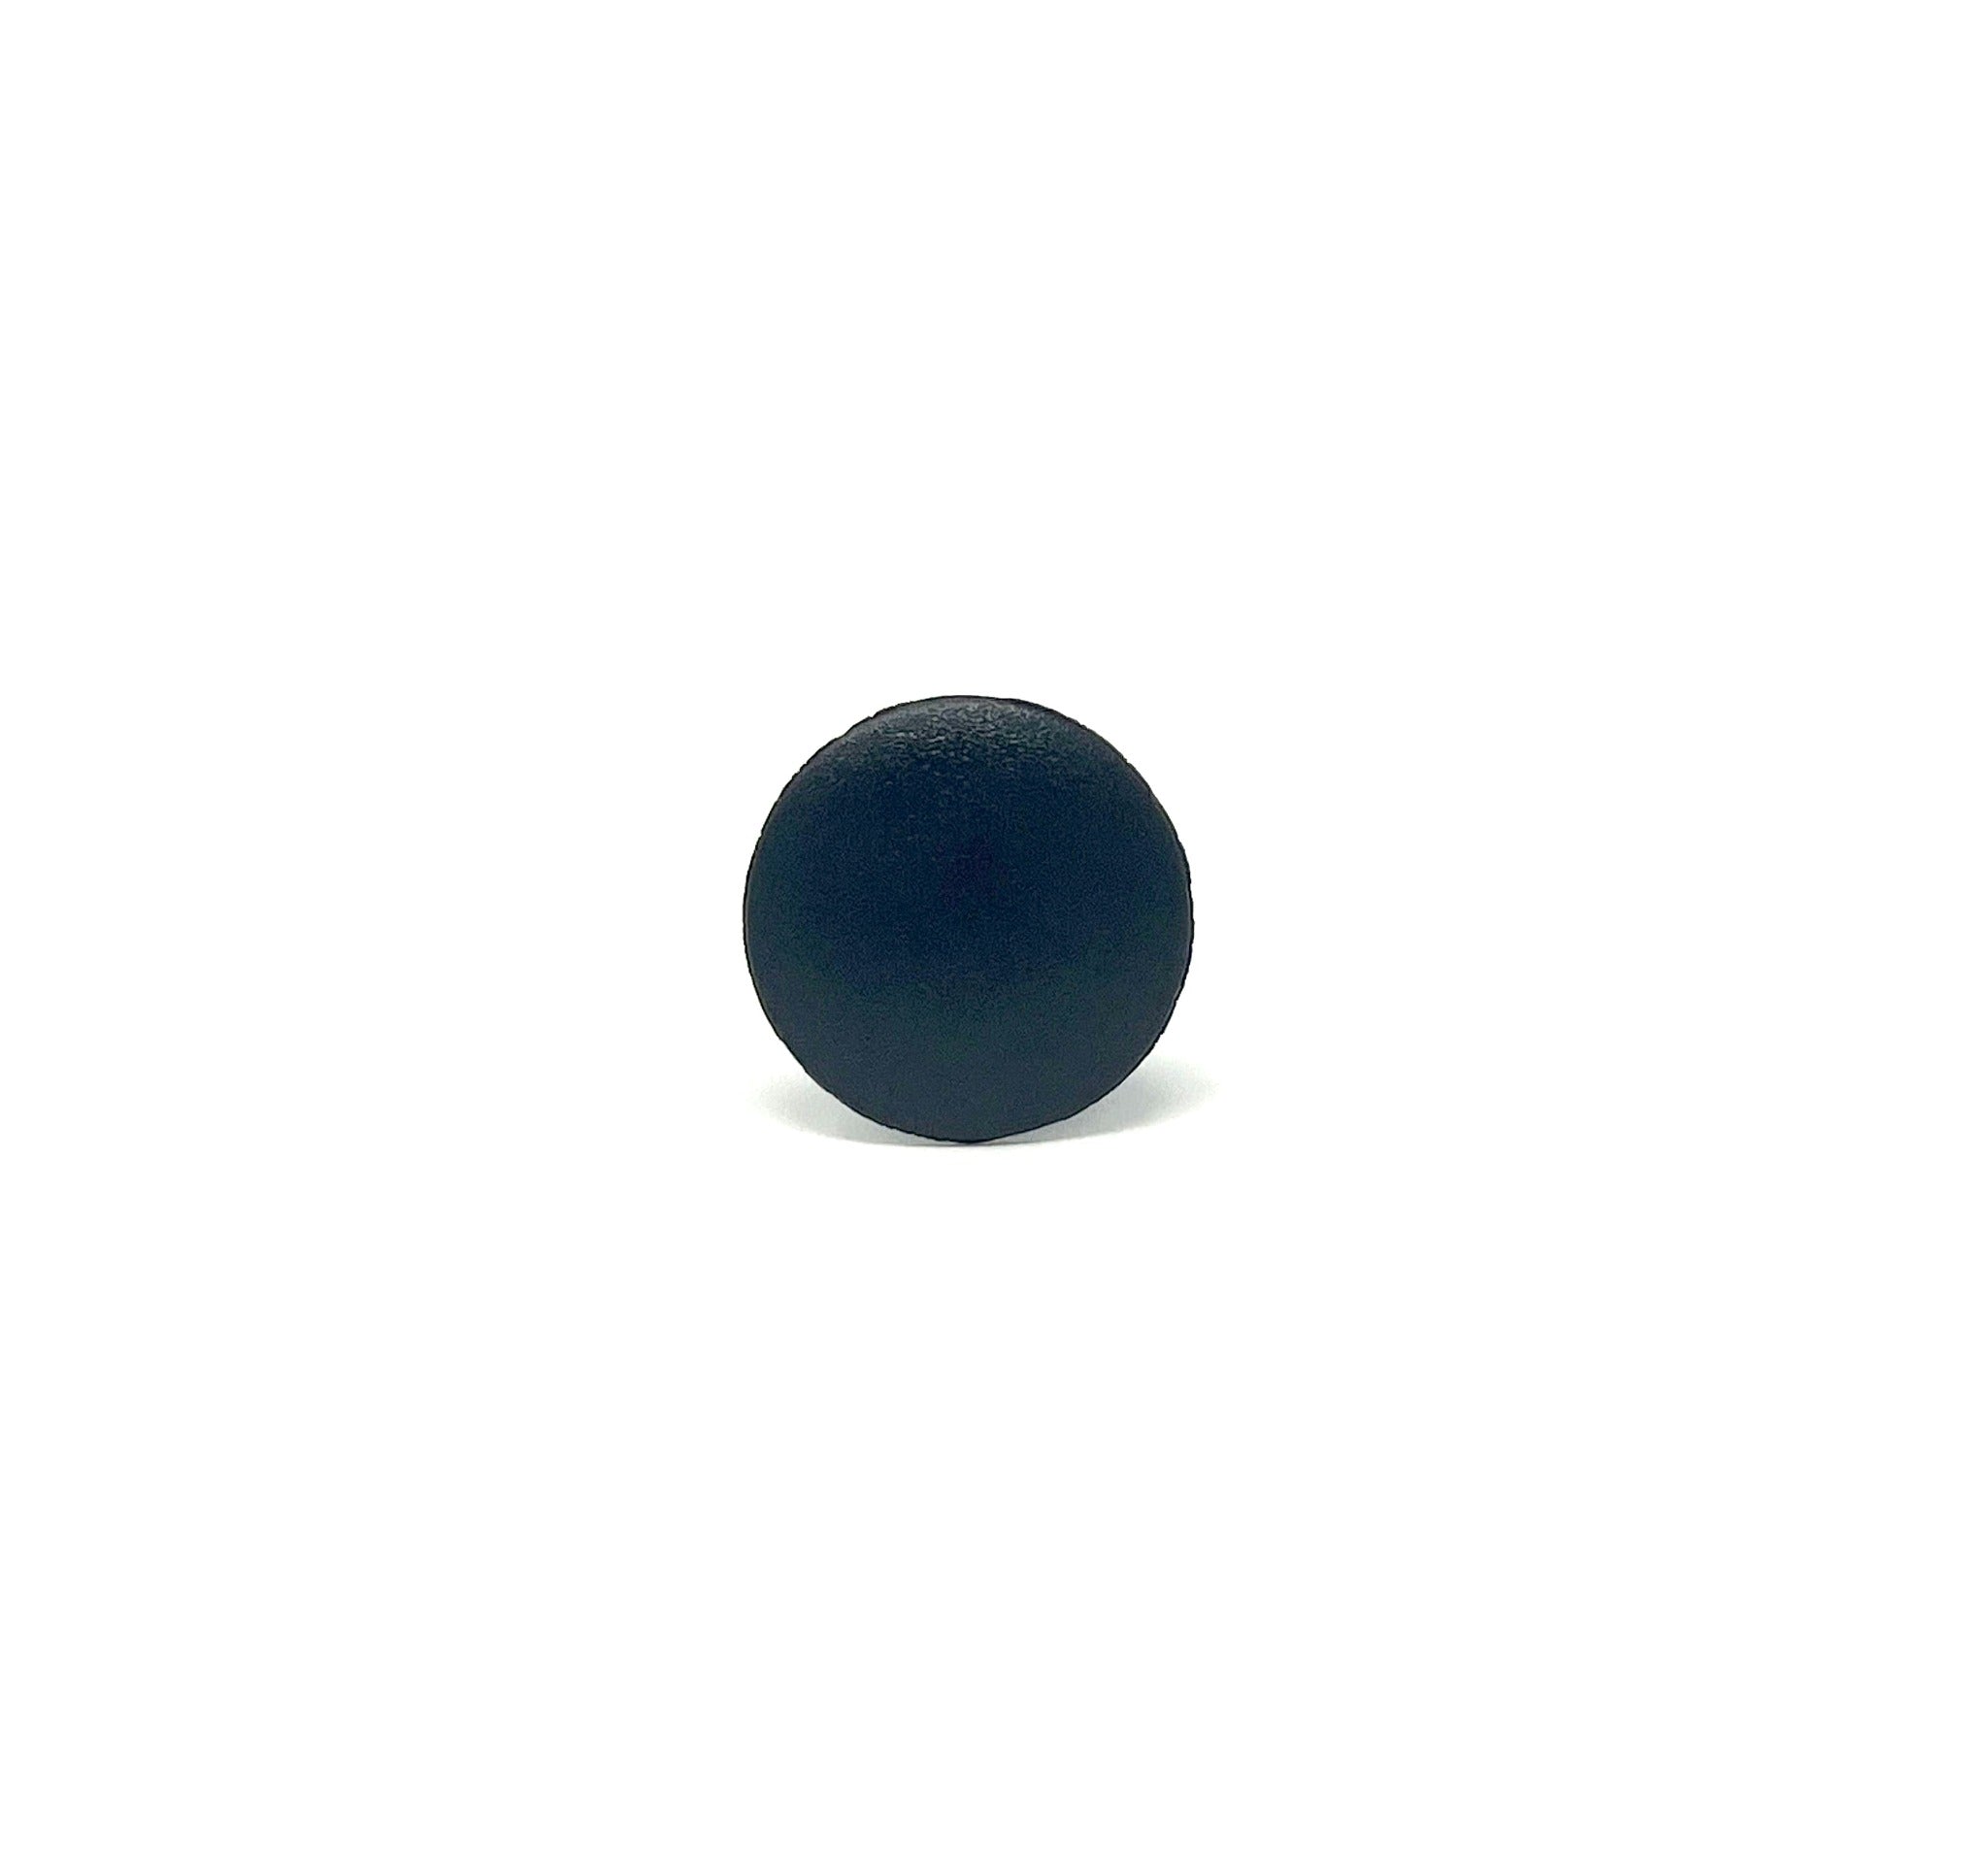 Black Universal Nylon Trim Panel Retainer Head Diameter 5/8", Stem Diameter 3/8", Stem Length 3/4"  Ford # N807721 S (Pack of 50)